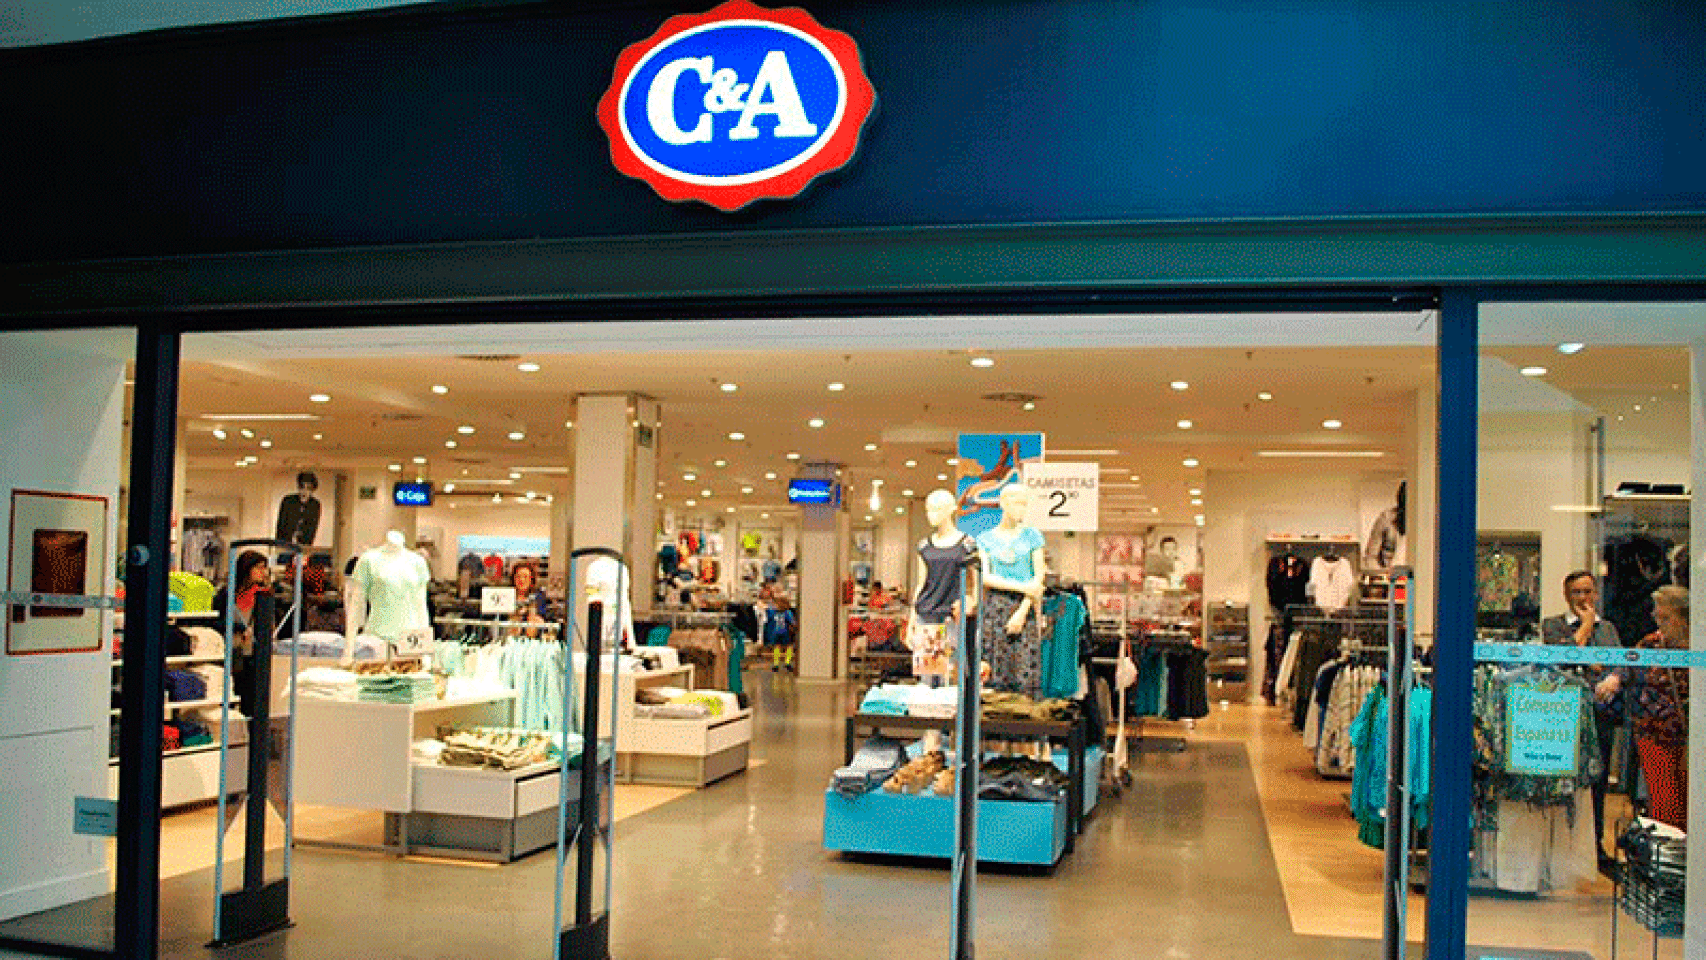 Imagen de una tienda de C&A.